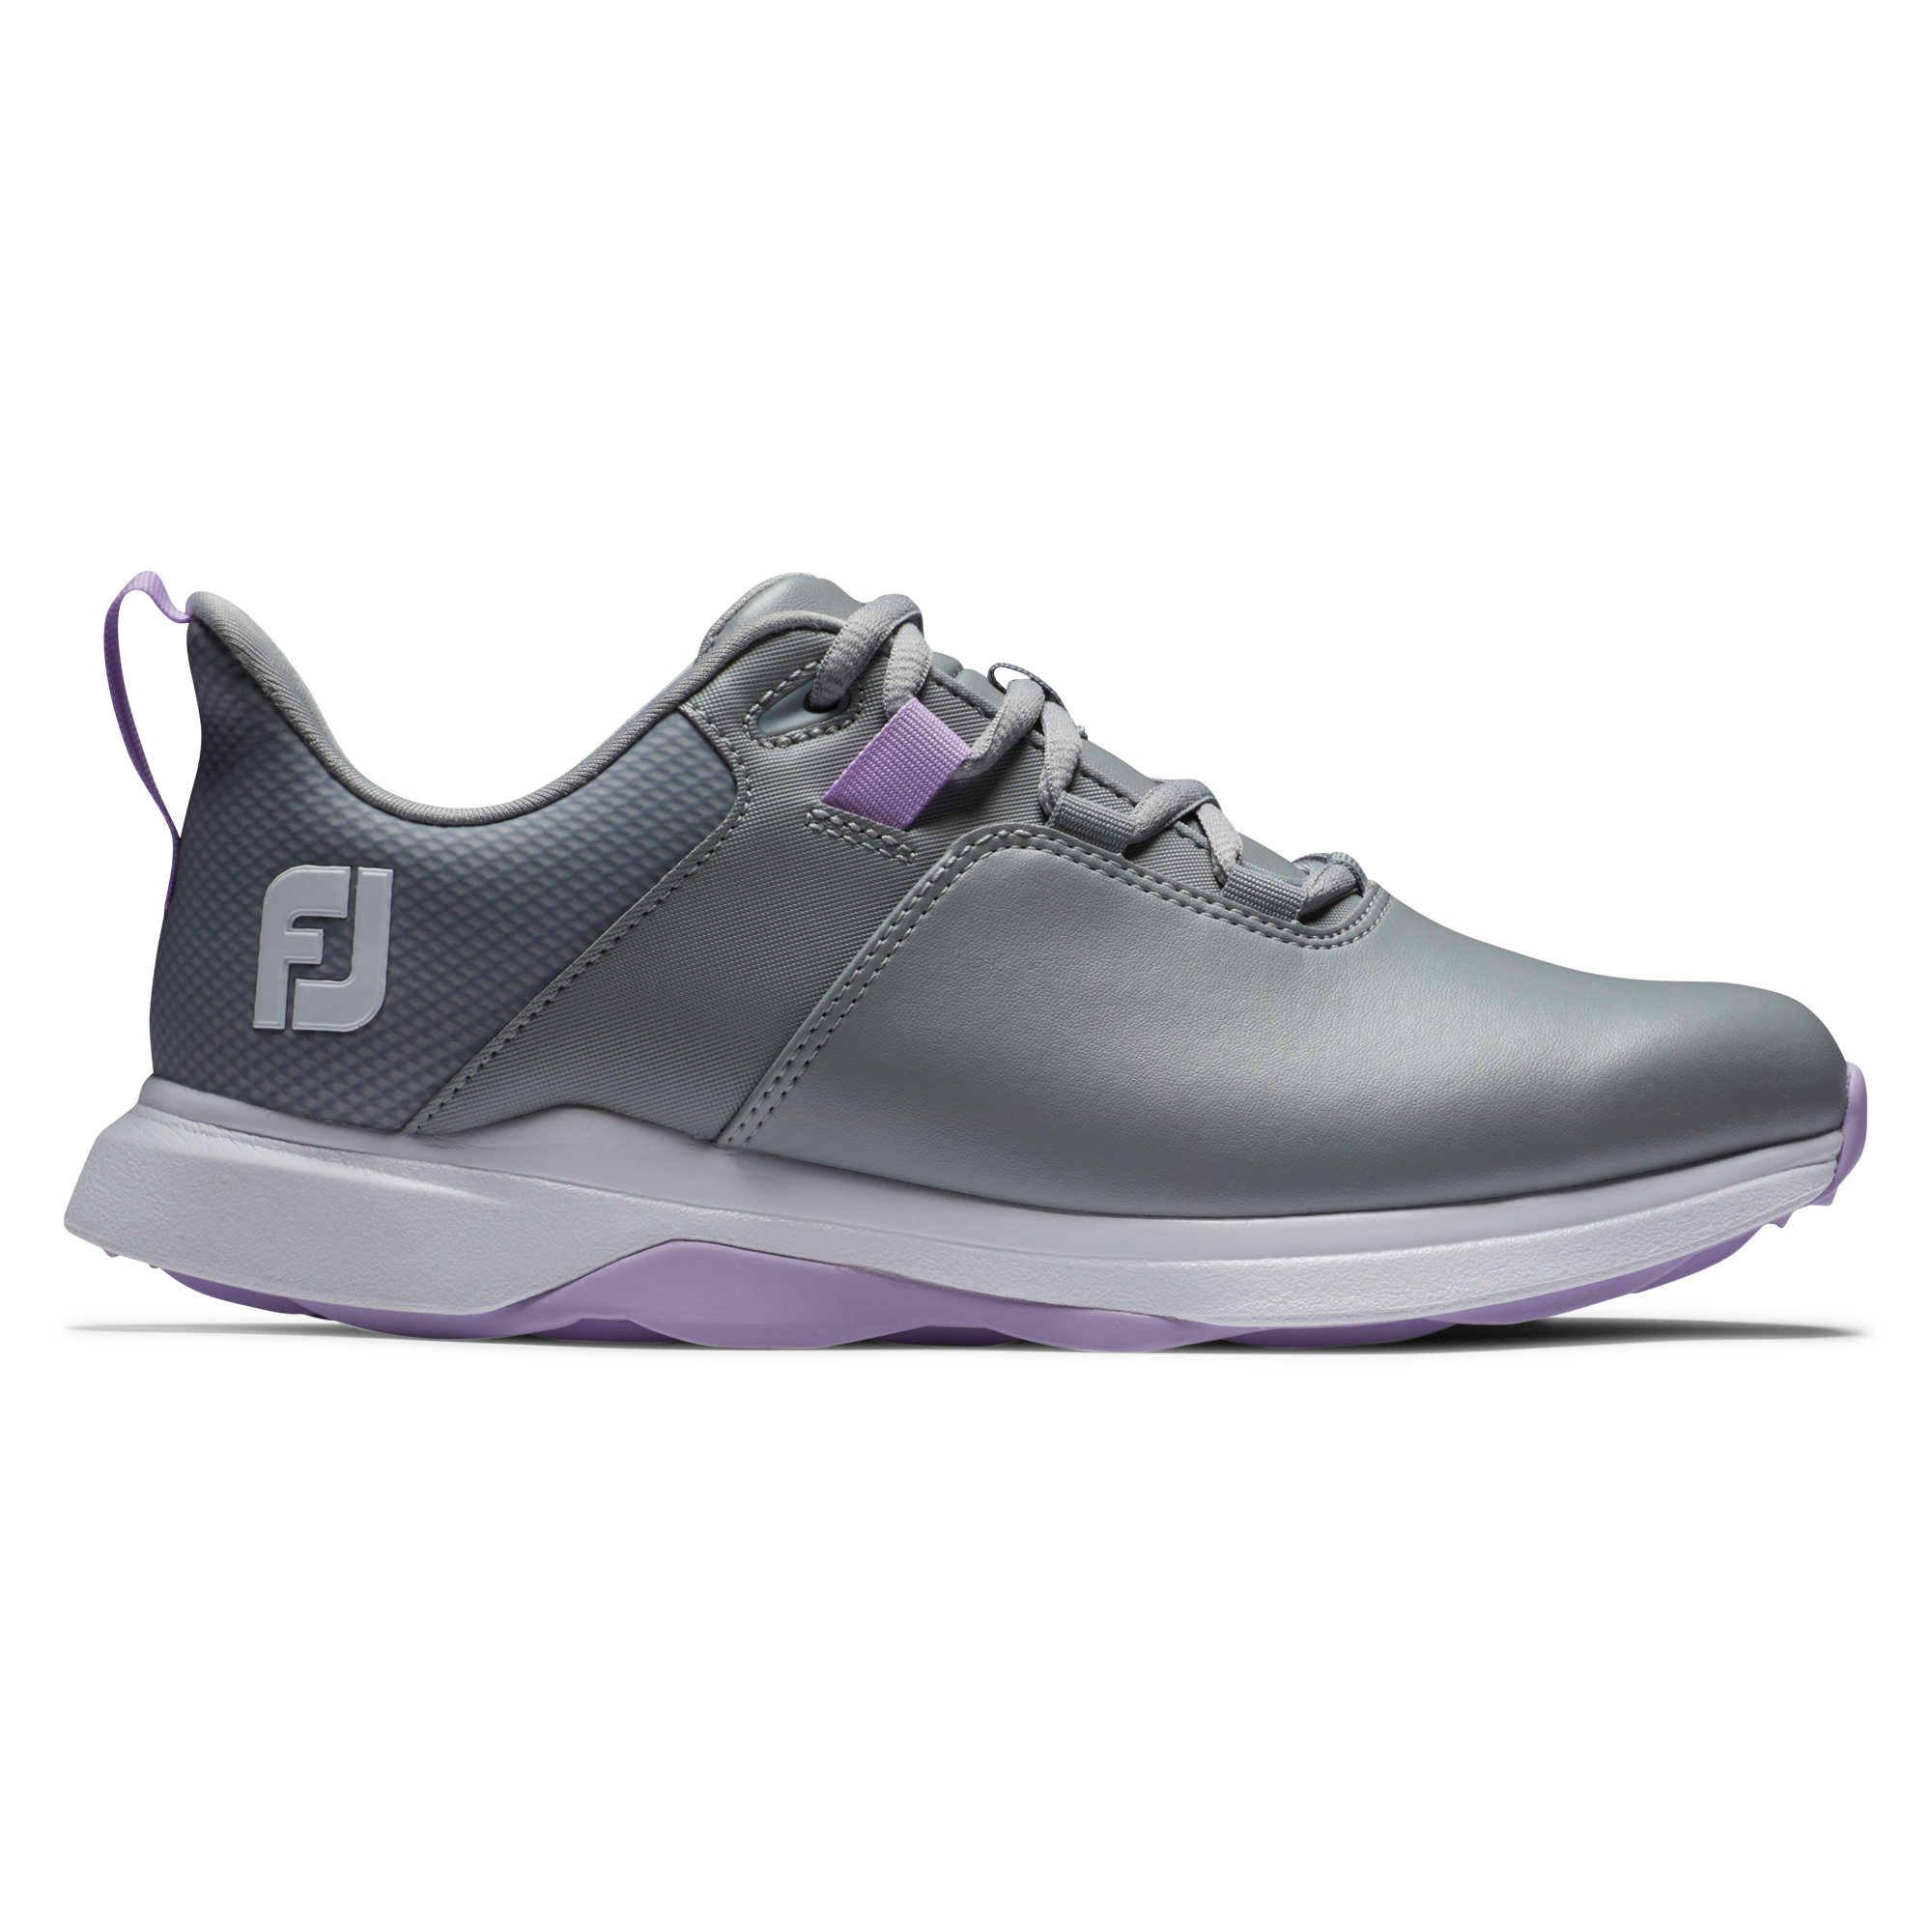 FootJoy ProLite dámské golfové boty, šedé, vel. 4,5 UK